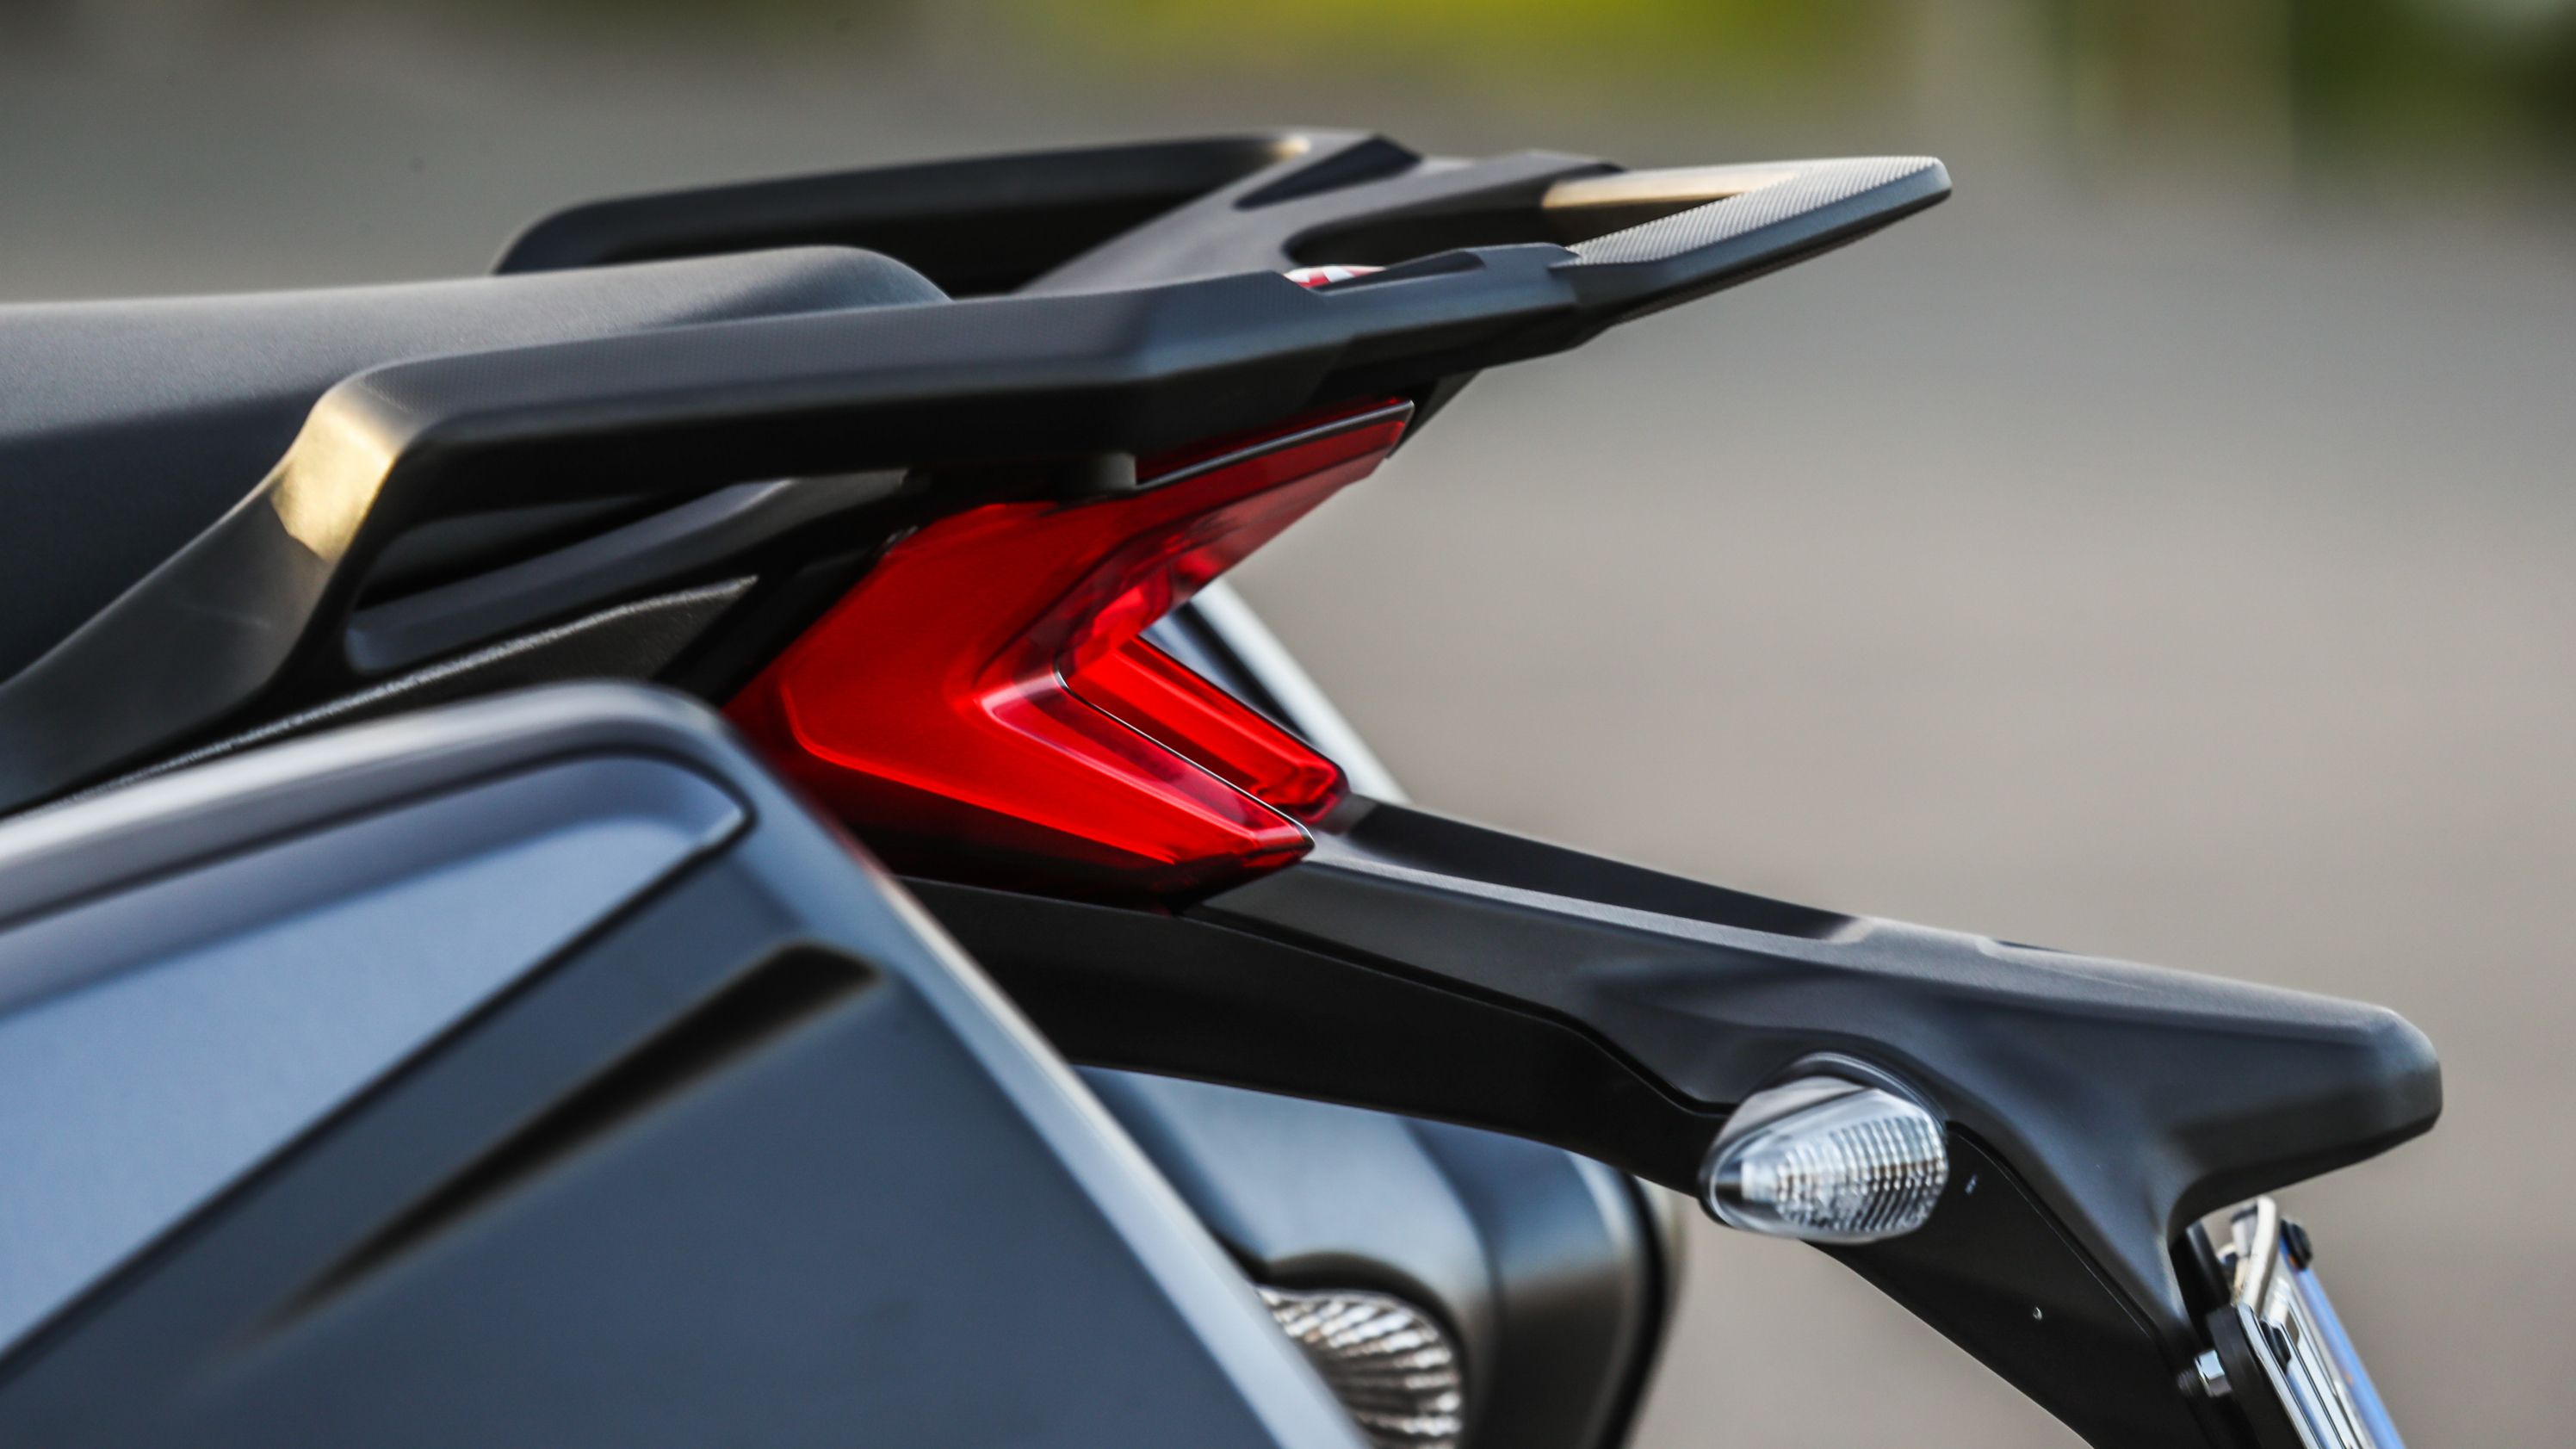 2018 - 2019 Ducati Multistrada 1260 S / S D|air